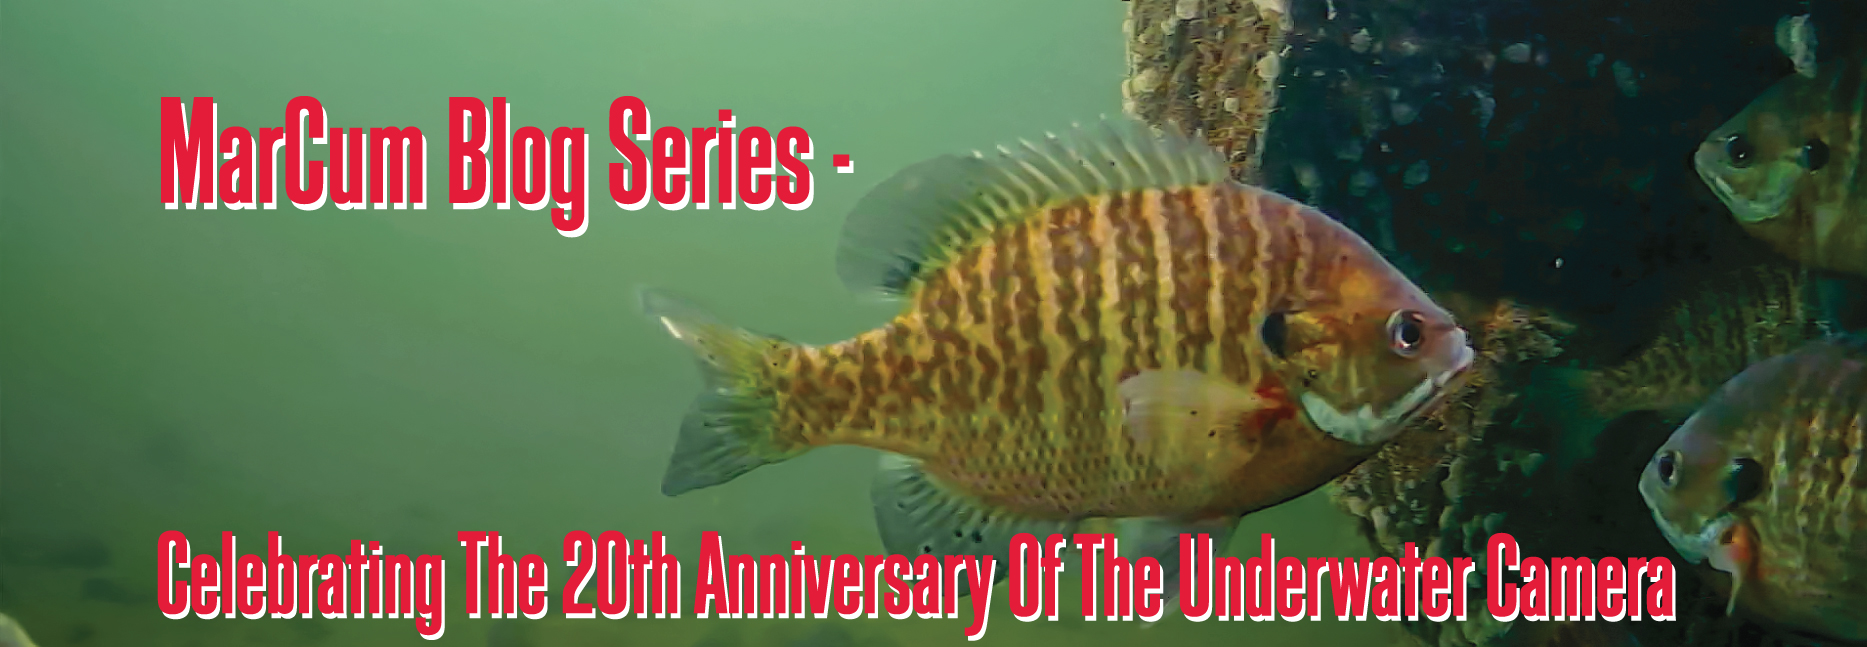 20th Anniversary of the Underwater Camera - Joel Nelson UW Camera